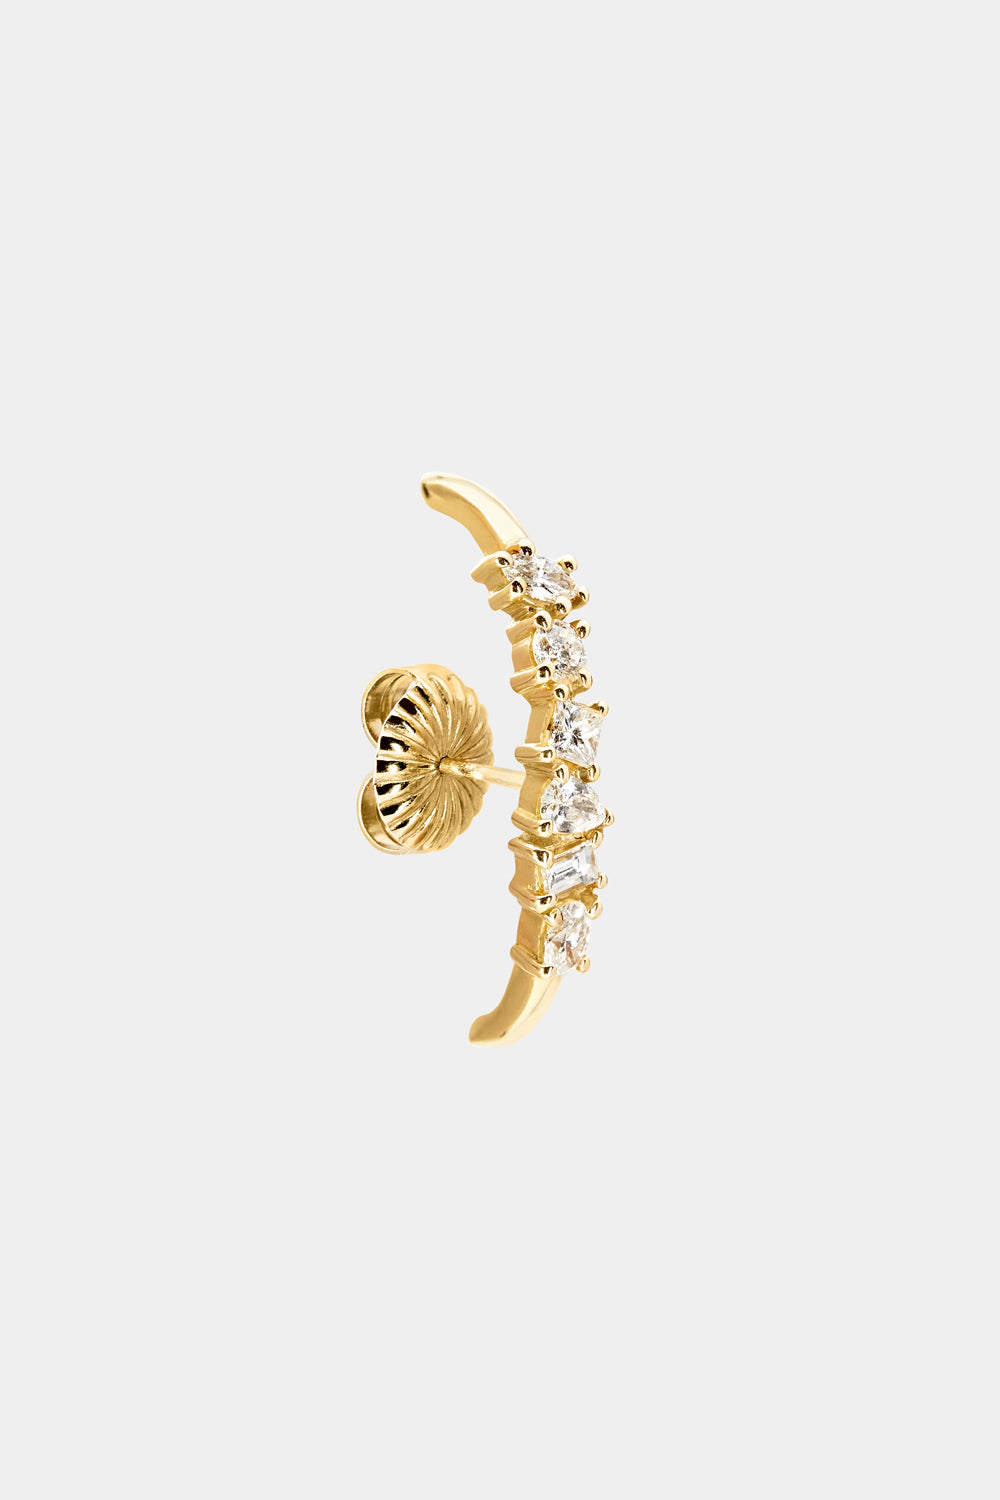 Scattered Diamond Earring | 18K Yellow Gold| Natasha Schweitzer